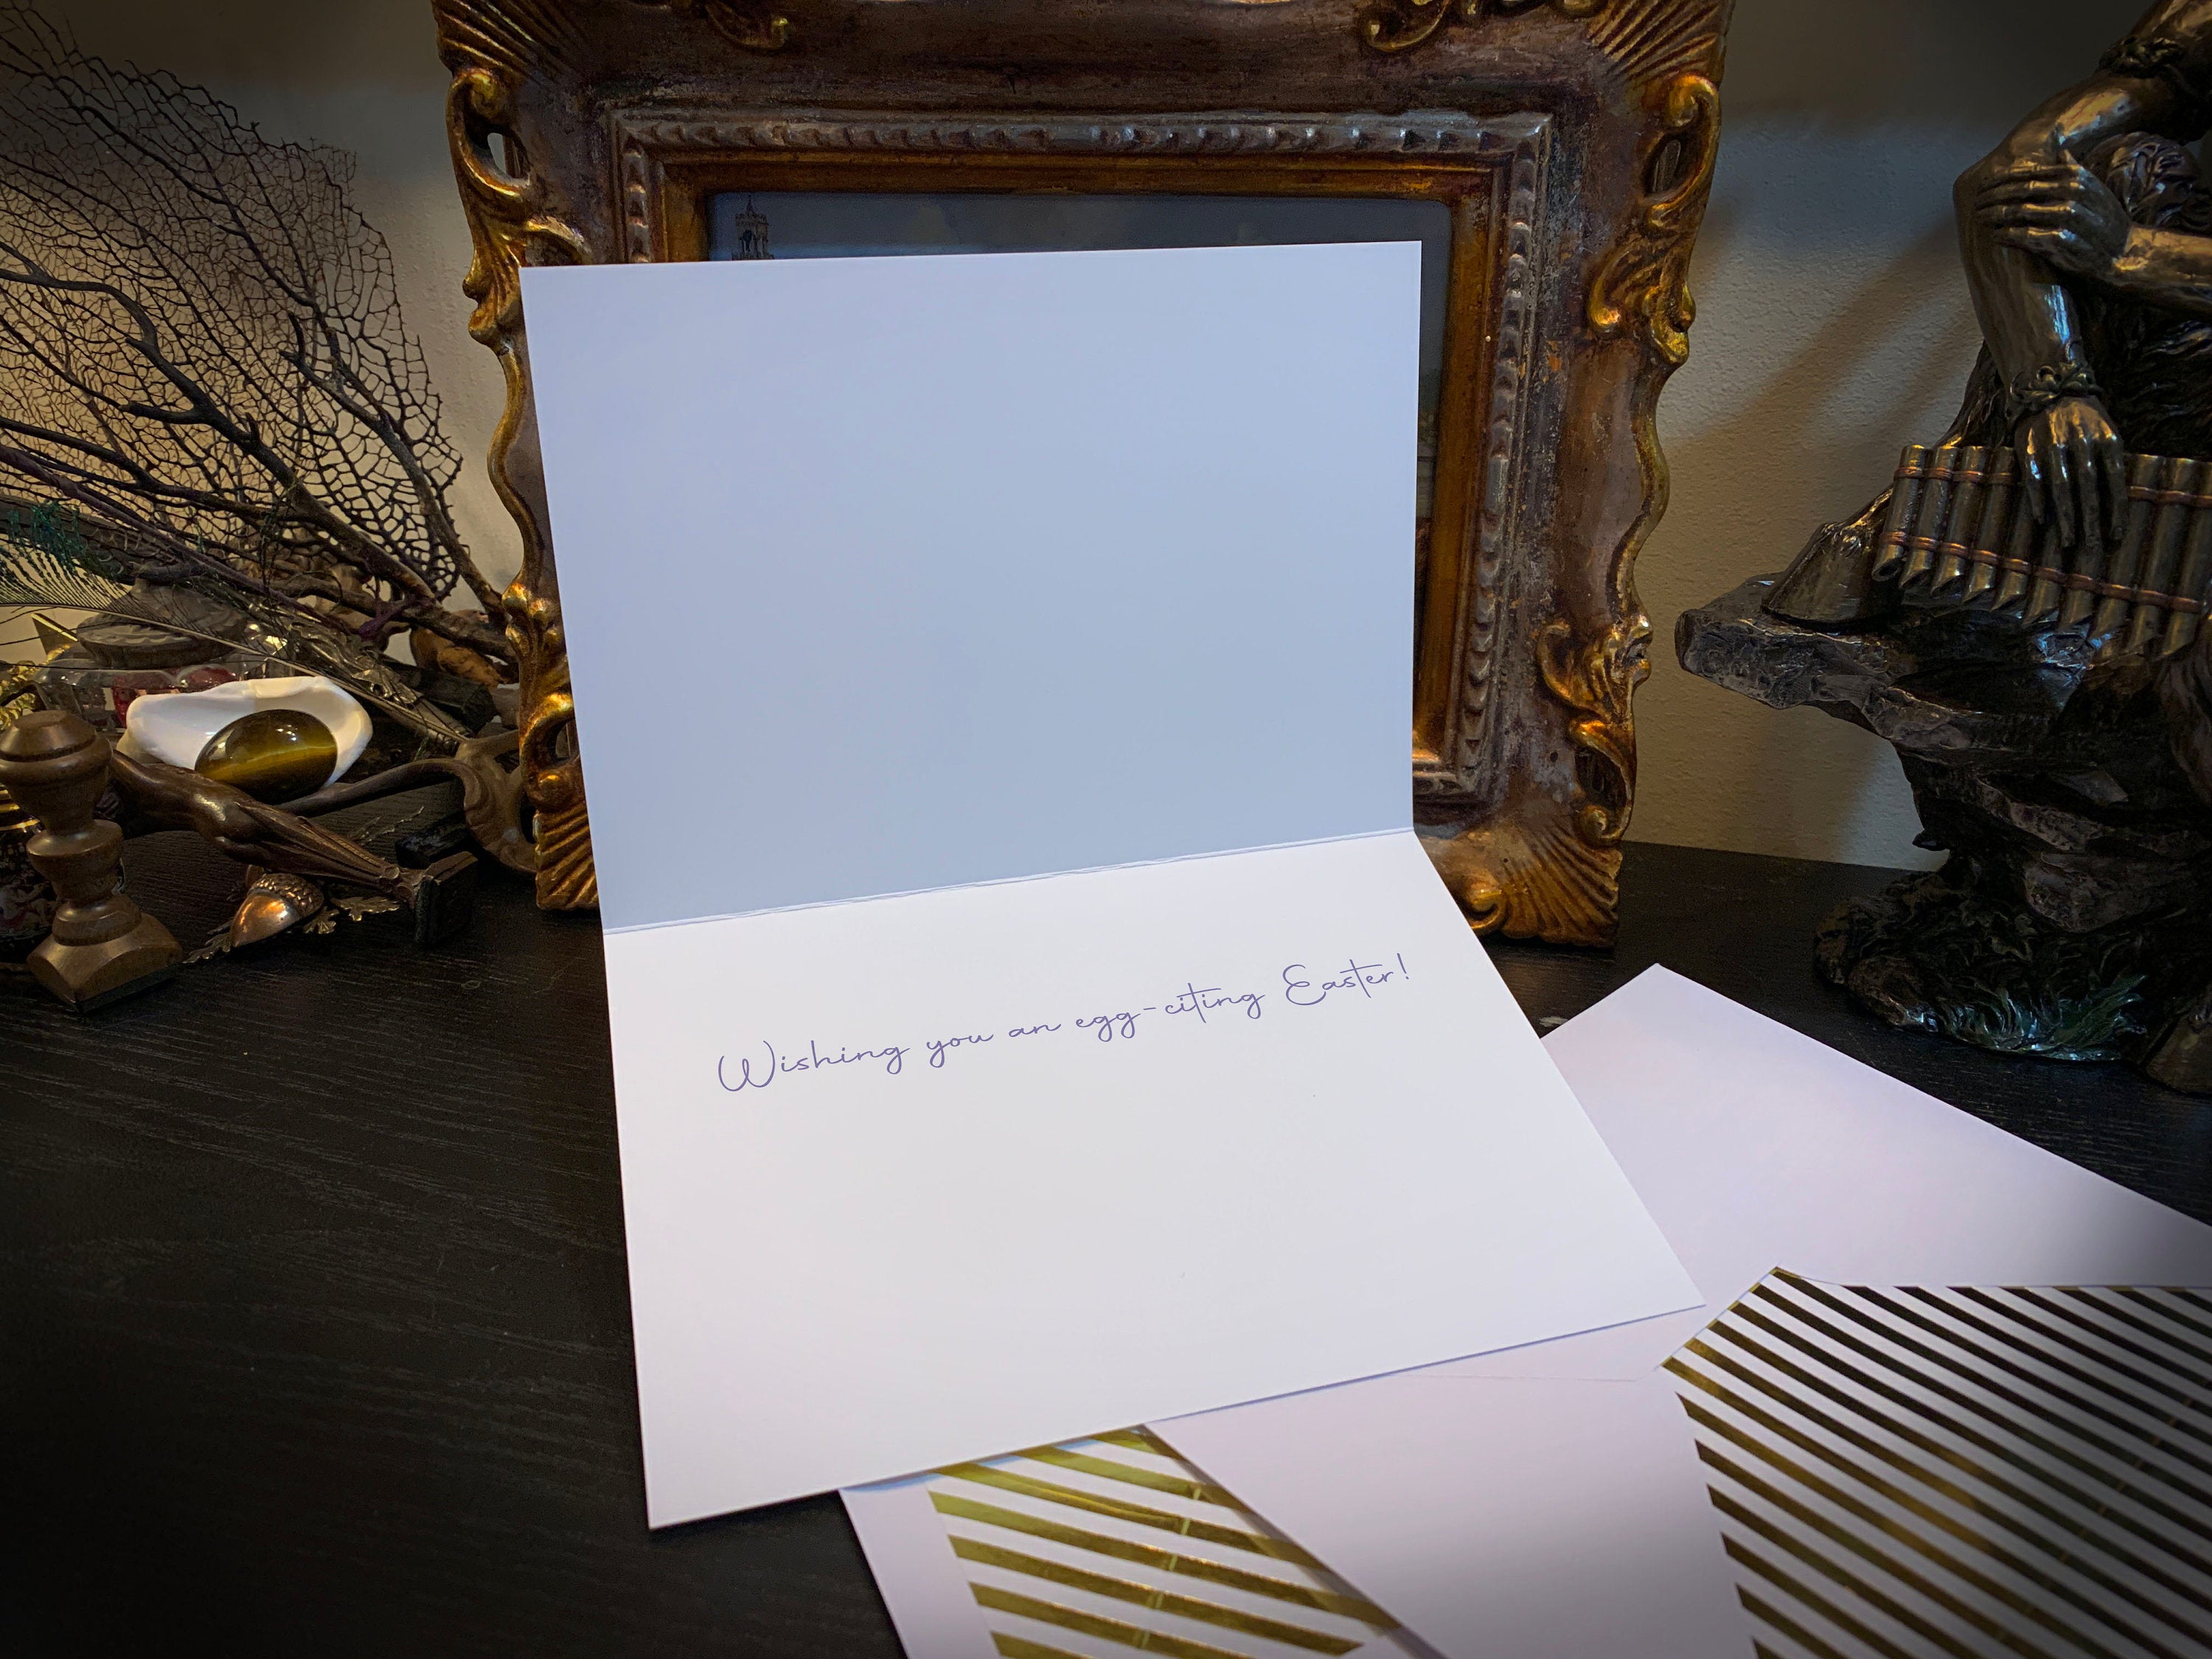 Pastel Easter Eggs, Easter Greeting Card with Elegant Striped Gold Foil Envelope, 1 Card/Envelope